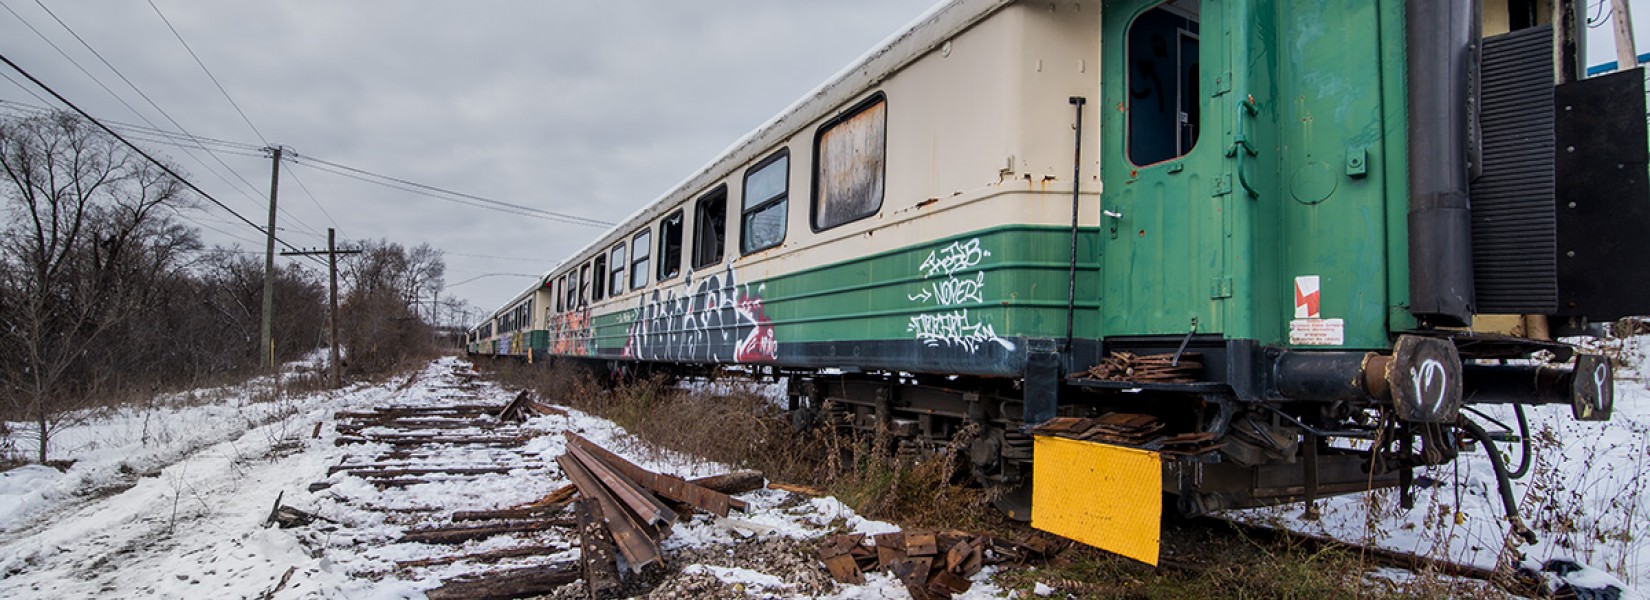 Le train touristique abandonné